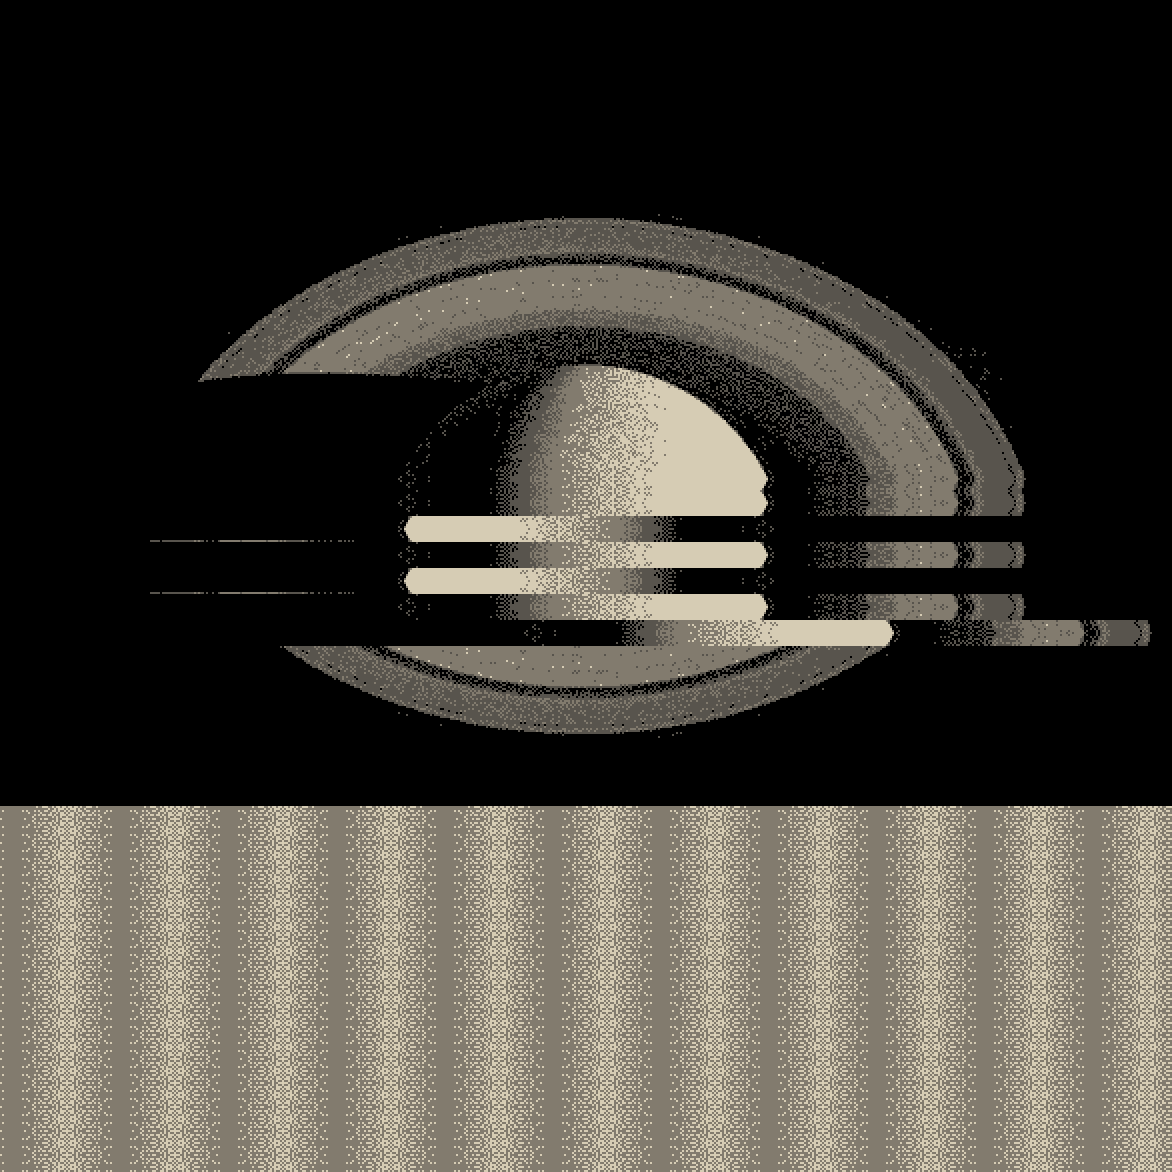 Saturn - COSMOGLITCH - Cyberborea